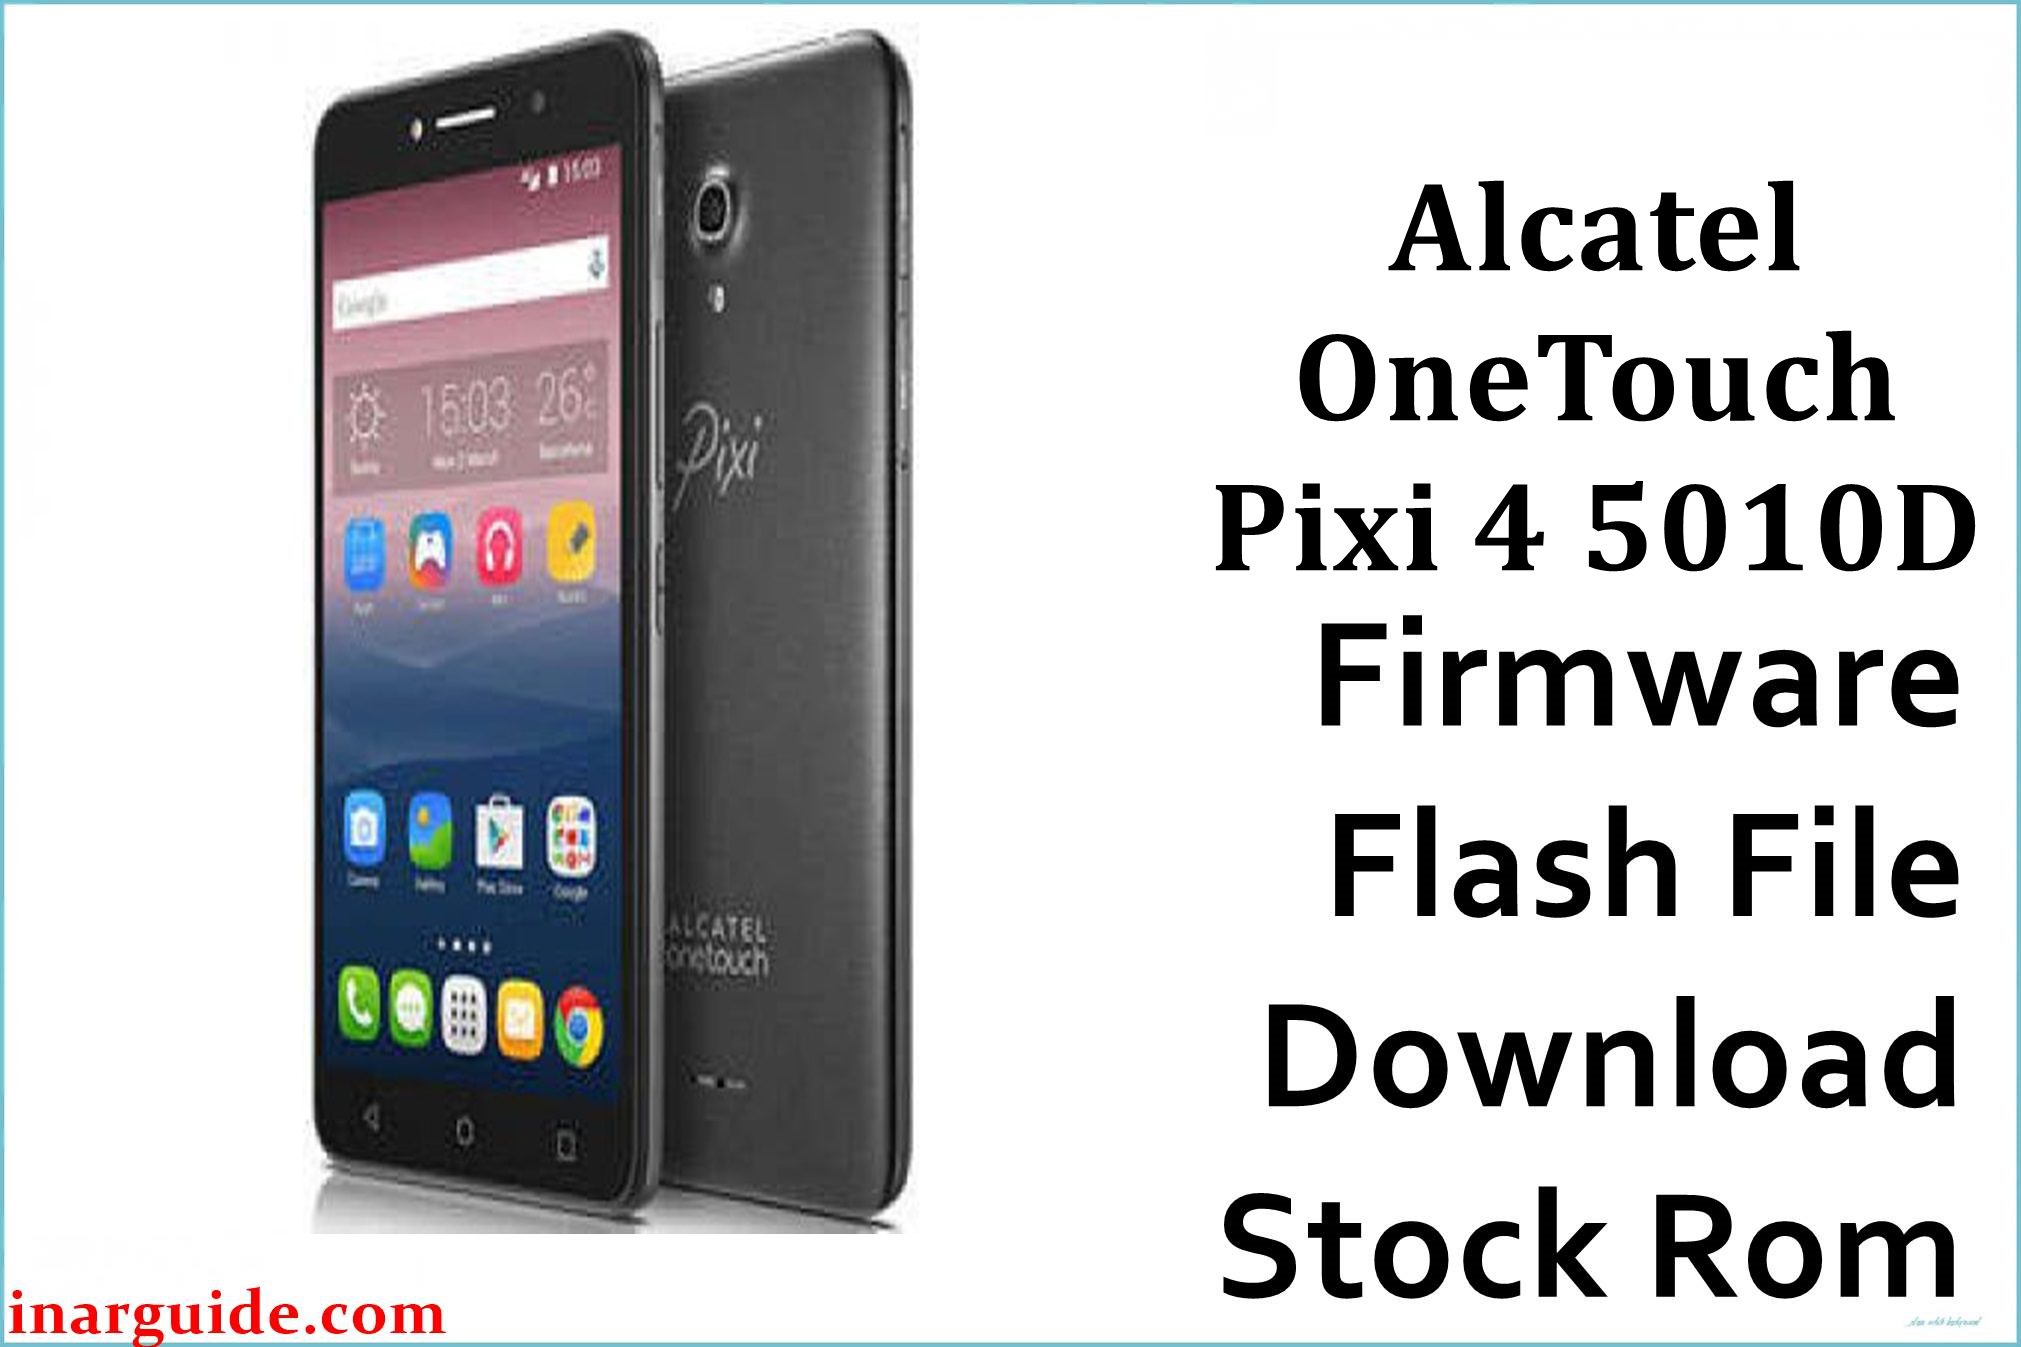 Alcatel OneTouch Pixi 4 5010D